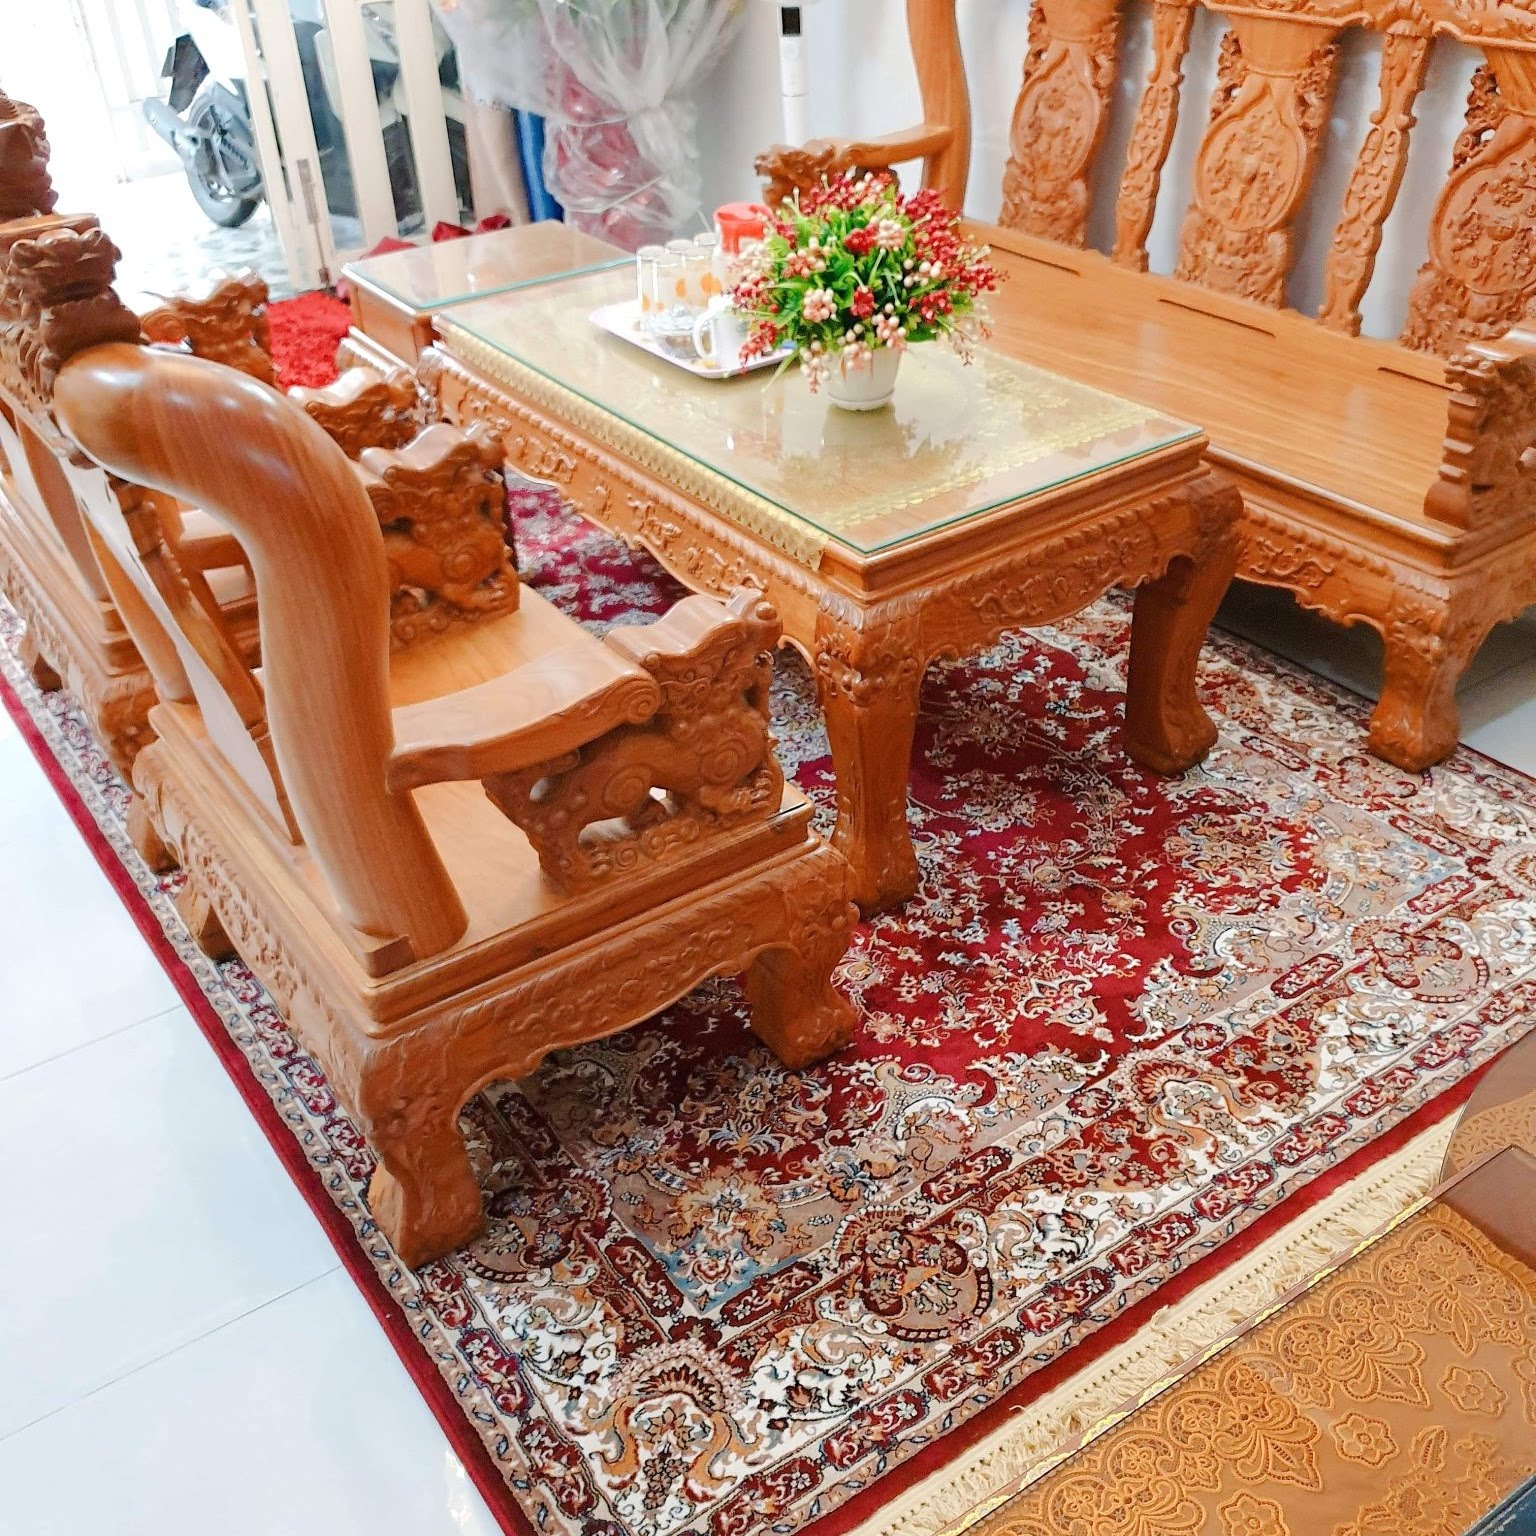 Thảm trải sàn Châu Âu - Thổ Nhĩ Kỳ - Thamdepsaigon - Thảm Đẹp Sài Gòn chính là những địa chỉ đáng tin cậy để bạn tìm kiếm một chiếc thảm trải sàn phòng khách đẹp và chất lượng nhất. Với chất liệu cao cấp và kiểu dáng đa dạng, bạn sẽ dễ dàng tìm thấy một chiếc thảm ưng ý cho không gian của mình.